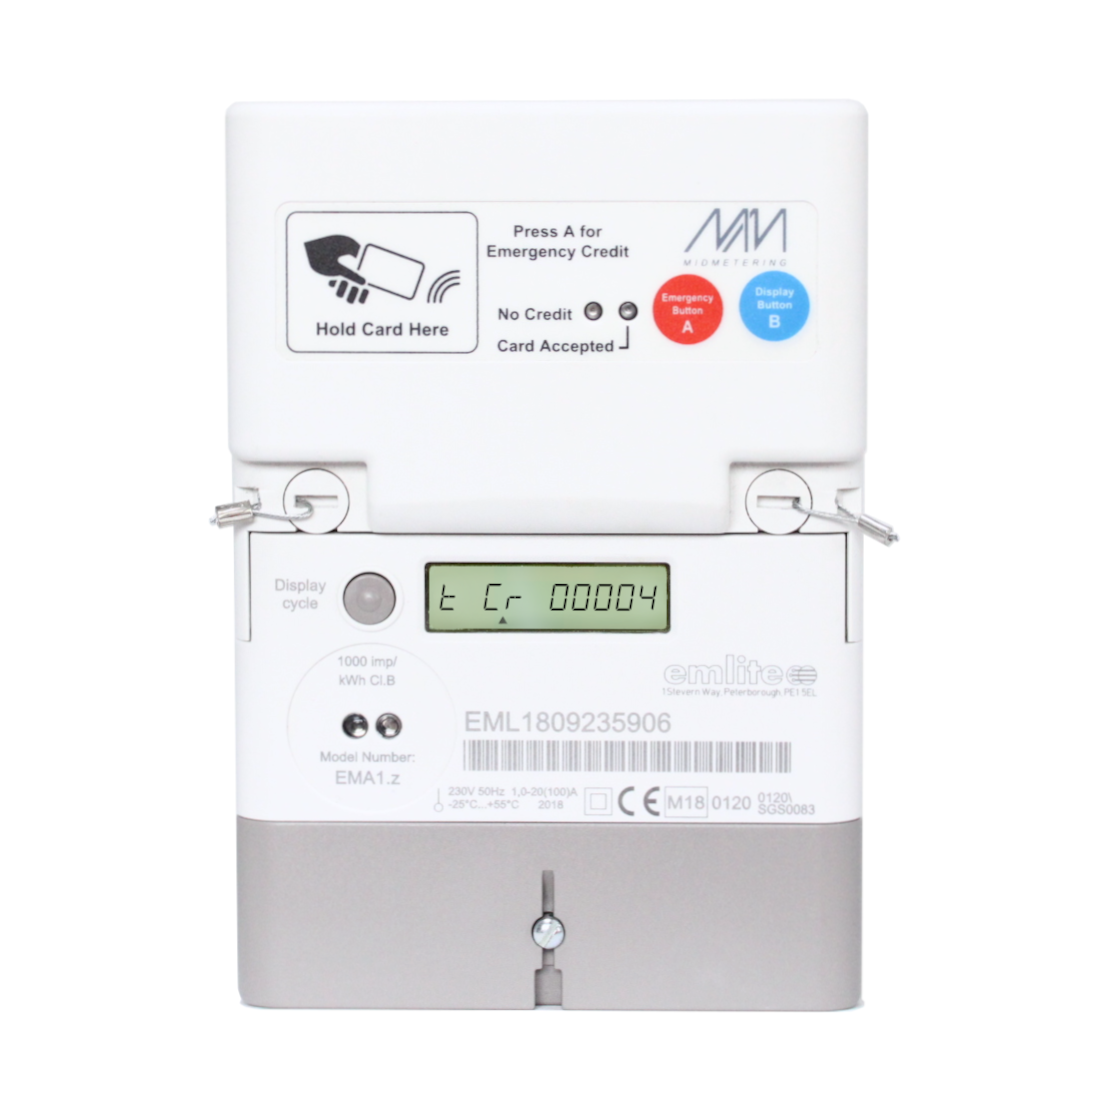 RFID METER CARDS Emlite Smart Meter Electricity Cards £20 Value Only £8 